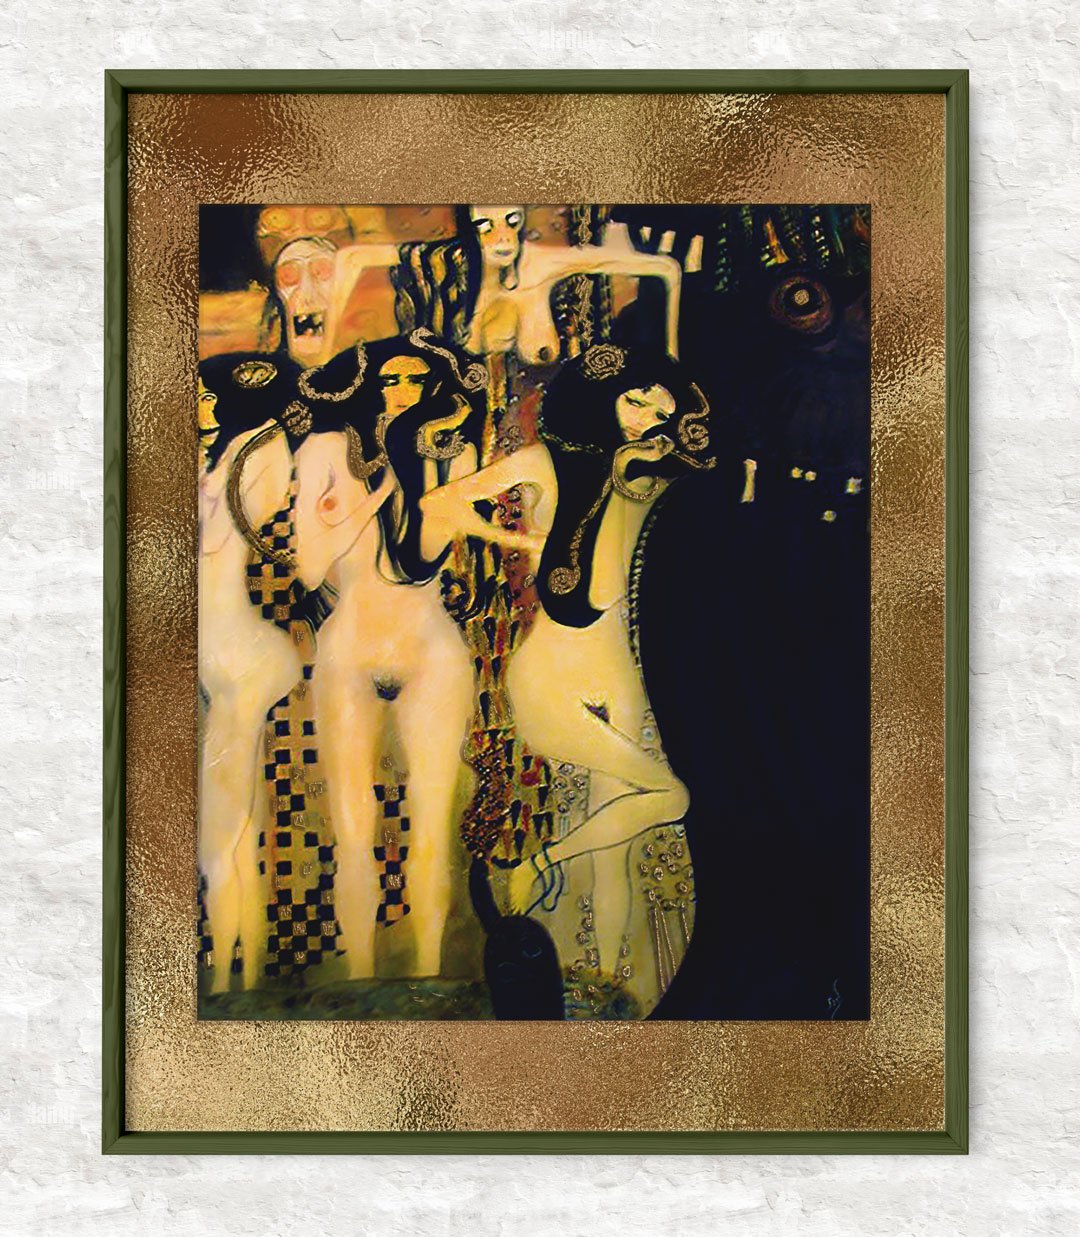 After Gustav Klimt's "Beethoven Frieze," Gorgon detail, 2003